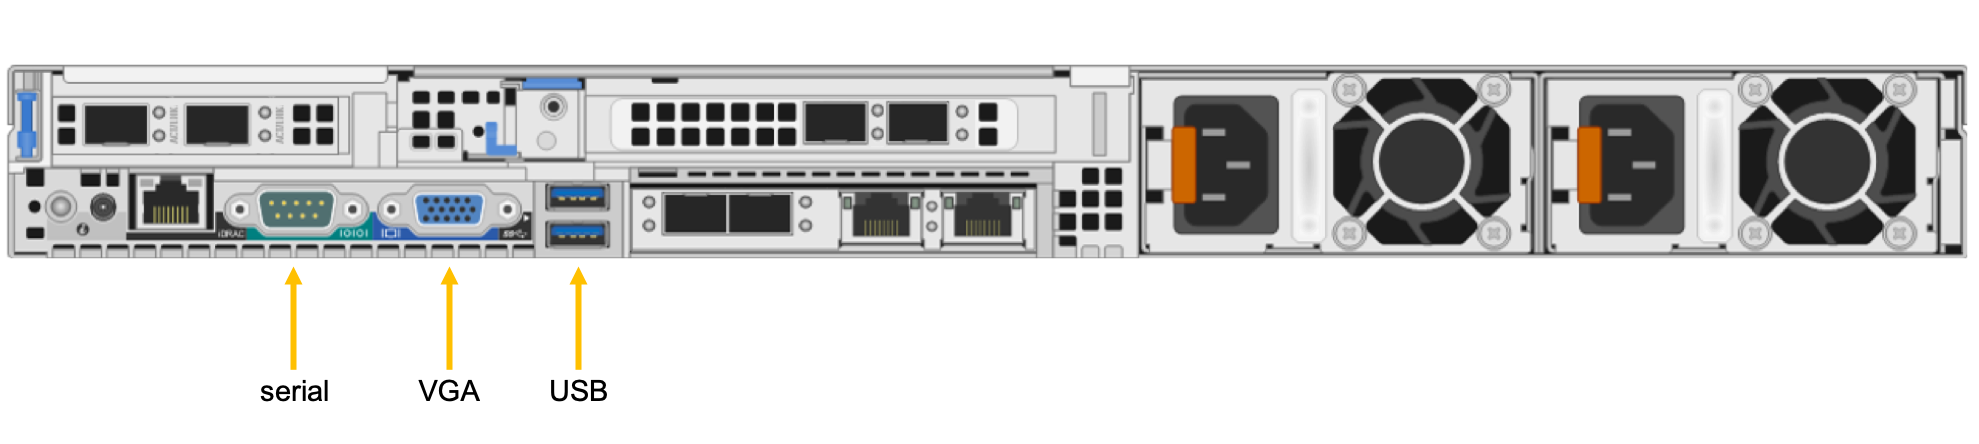 Diagrama da parte posterior do Azure FXT Edge Filer com as portas serial, VGA e USB rotuladas